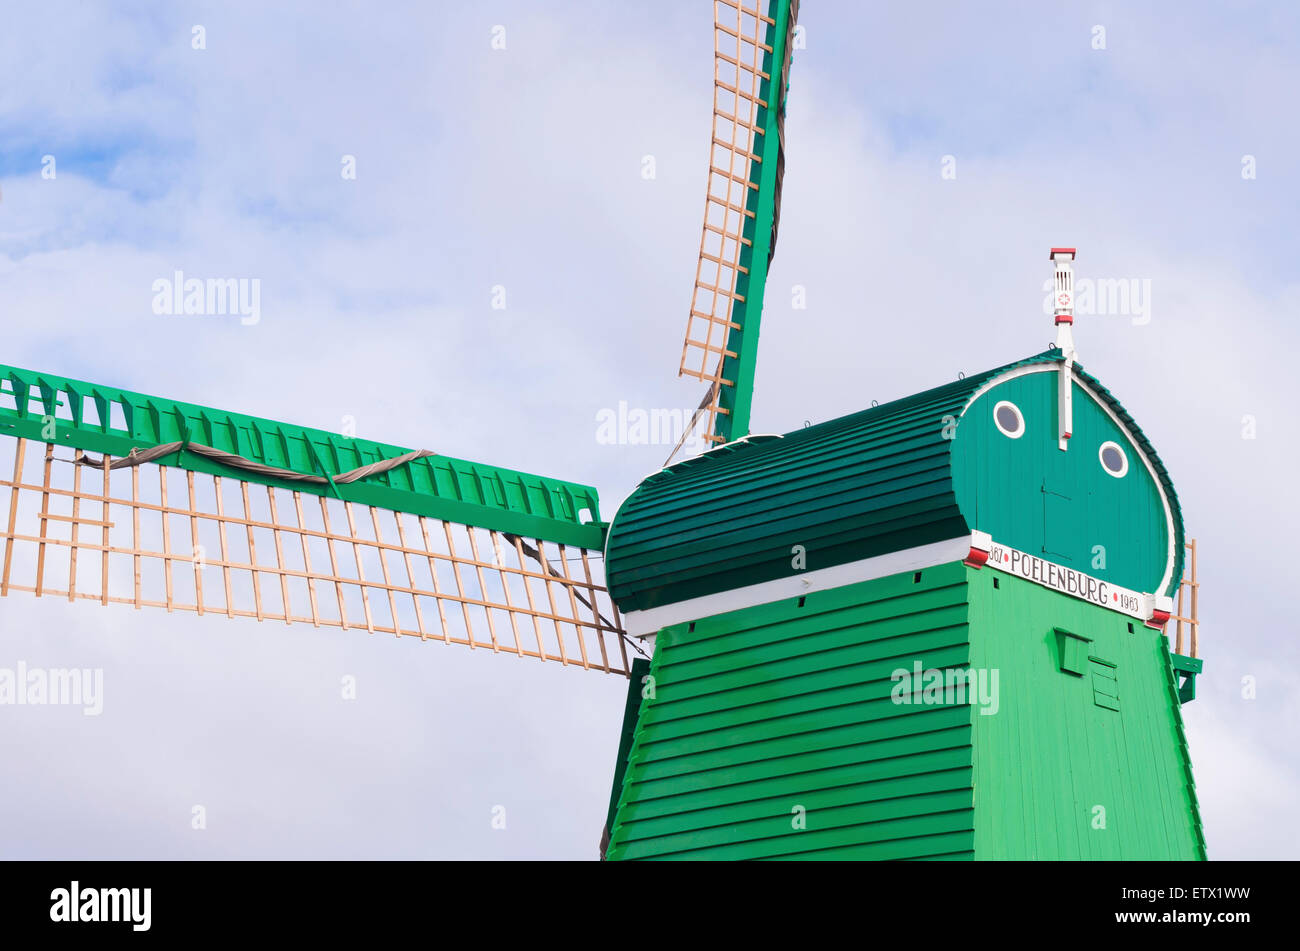 detail of a green windmill in zaanse schans, netherlands Stock Photo